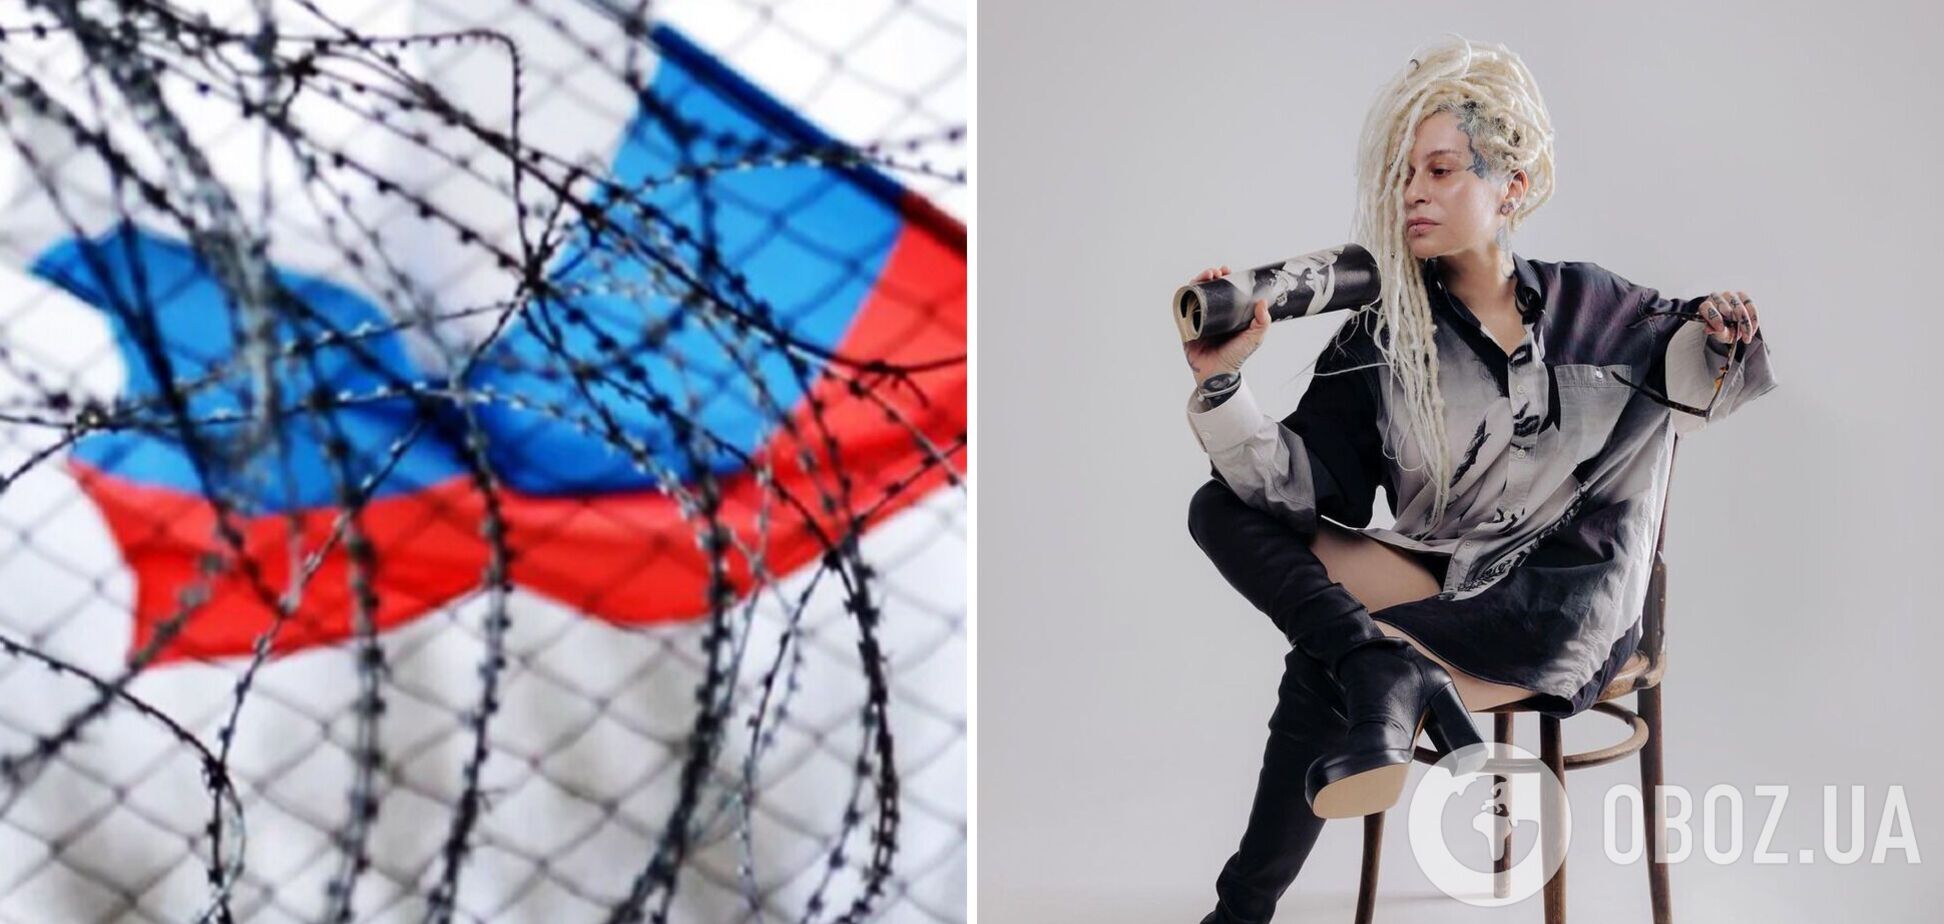 Все концерты в Европе и ОАЭ отменены: Россия отомстила певице Наргиз за поддержку Украины